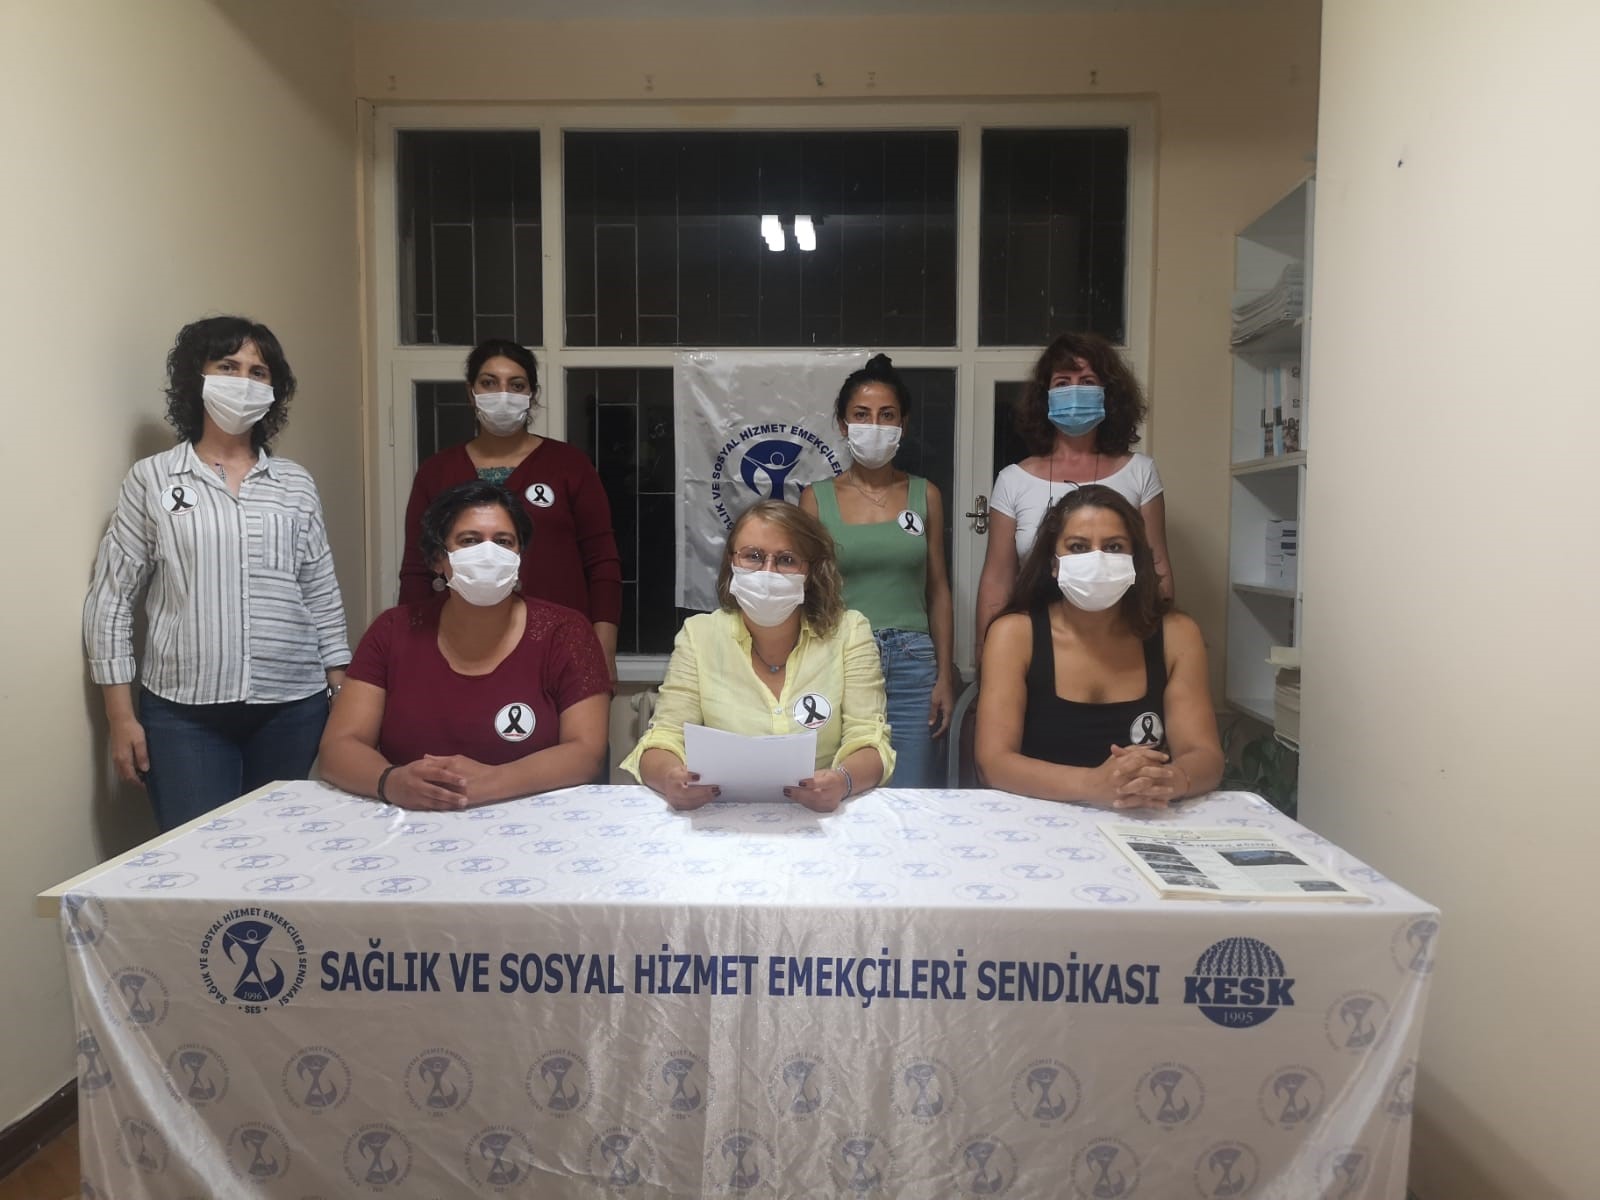 Sağlık Emekçilerine Yönelik Şiddeti Kınayan Anadolu Şubemiz: Artık Yeter, Yaşatırken Ölmek İstemiyoruz